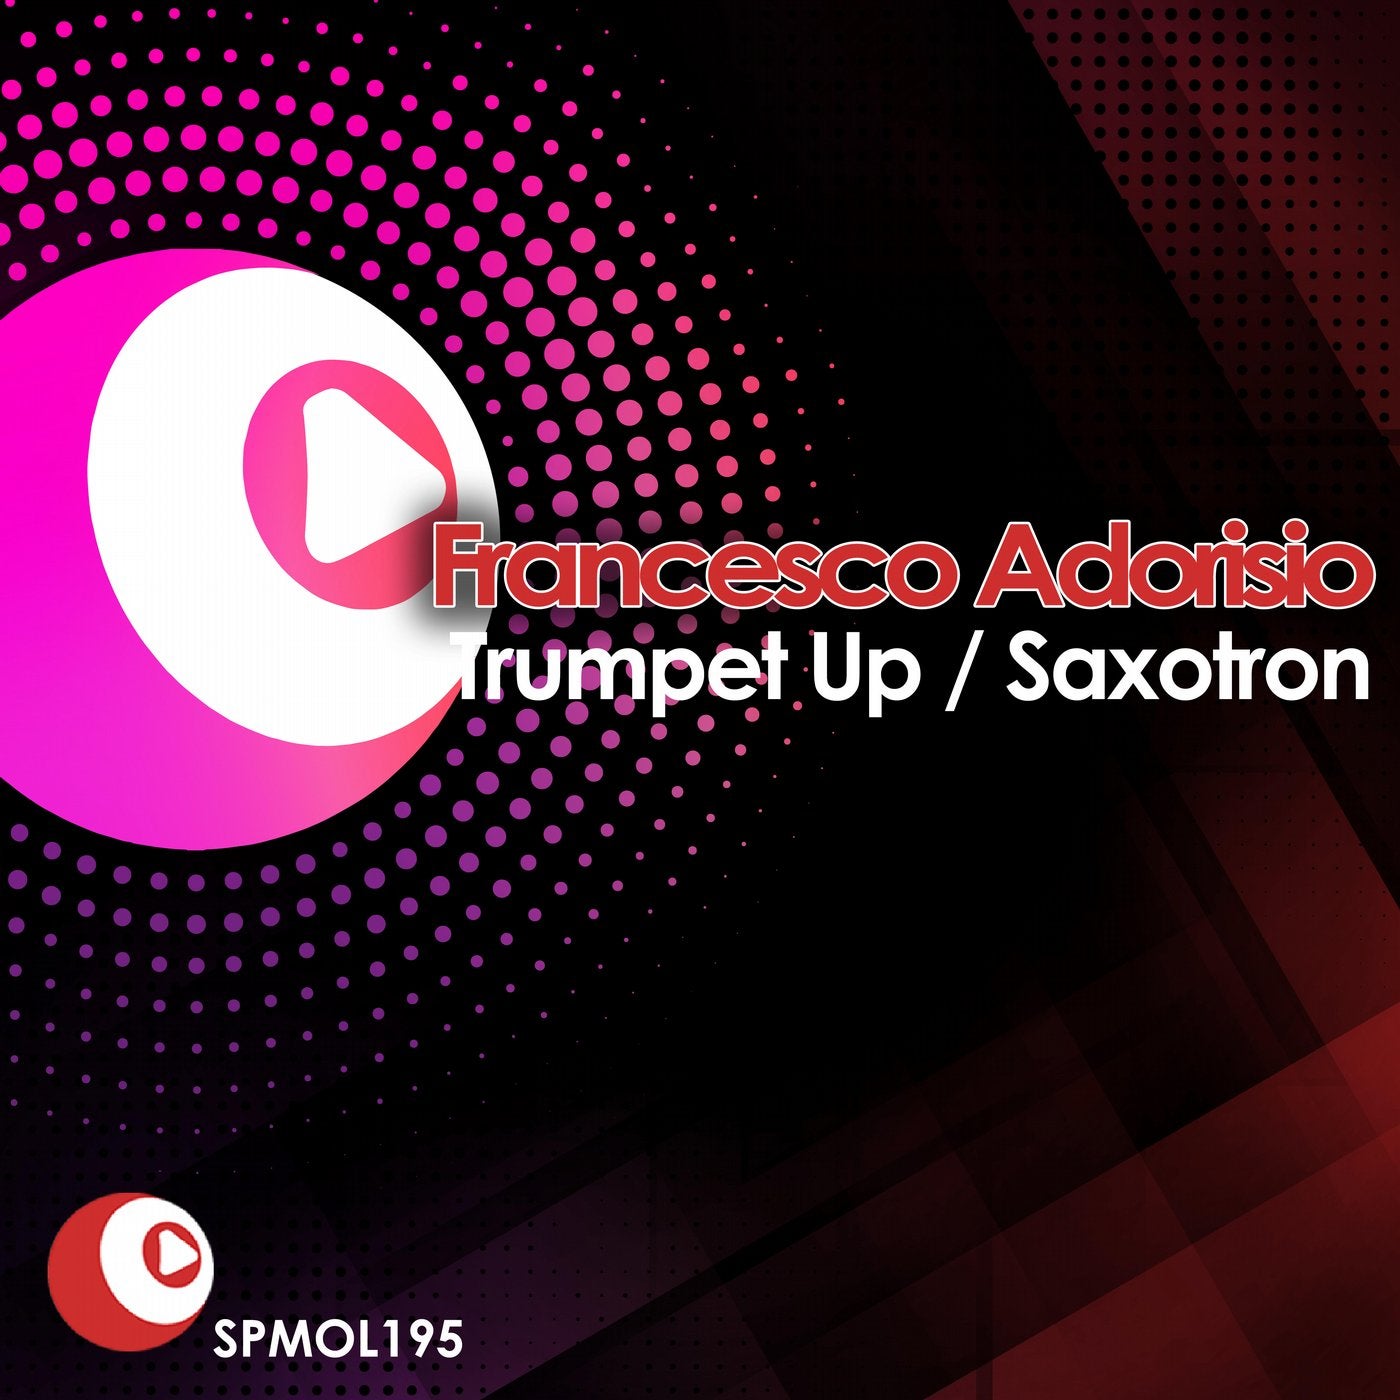 Trumpet Up / Saxotron